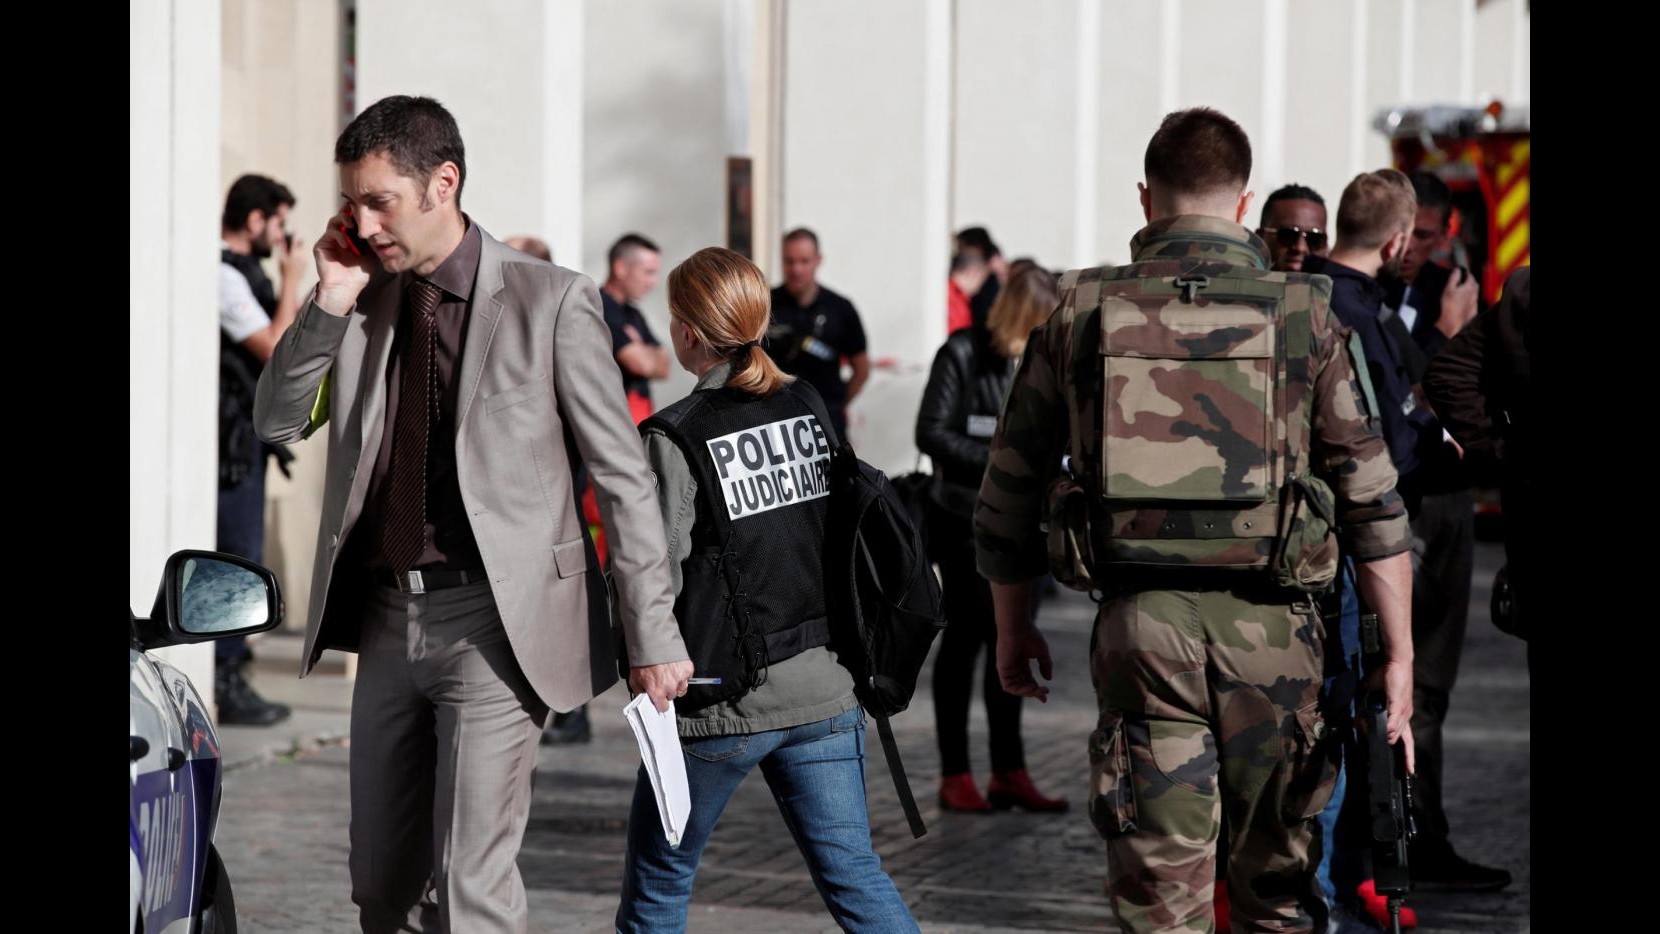 FOTO Parigi, auto travolge militari: si indaga per terrorismo